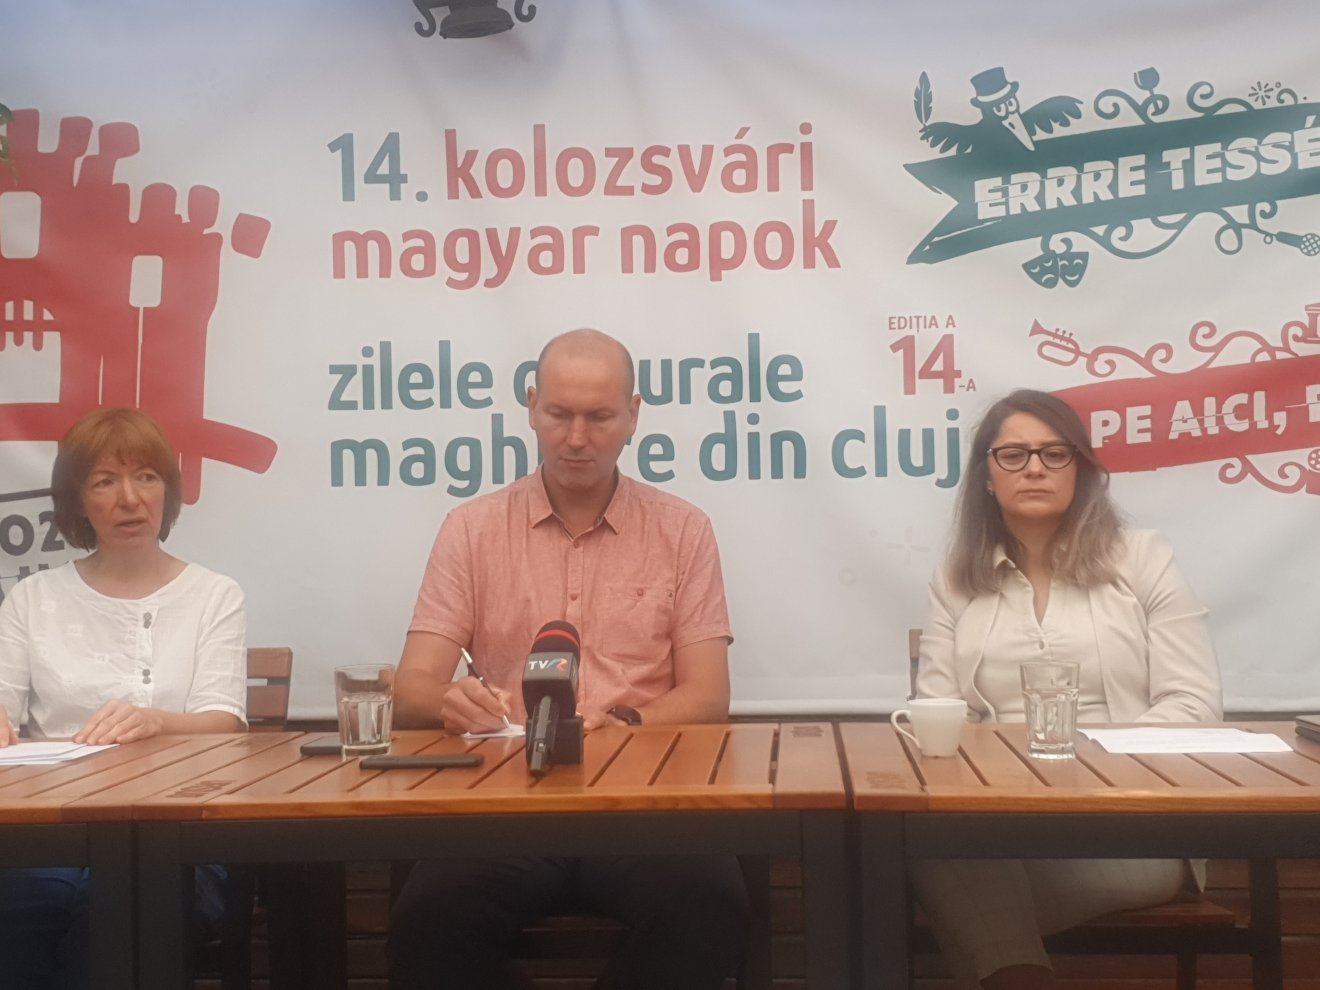 Belakja a majdnem teljesen felújított Farkas utcát is a hétvégén kezdődő, félezer programot kínáló Kolozsvári Magyar Napok